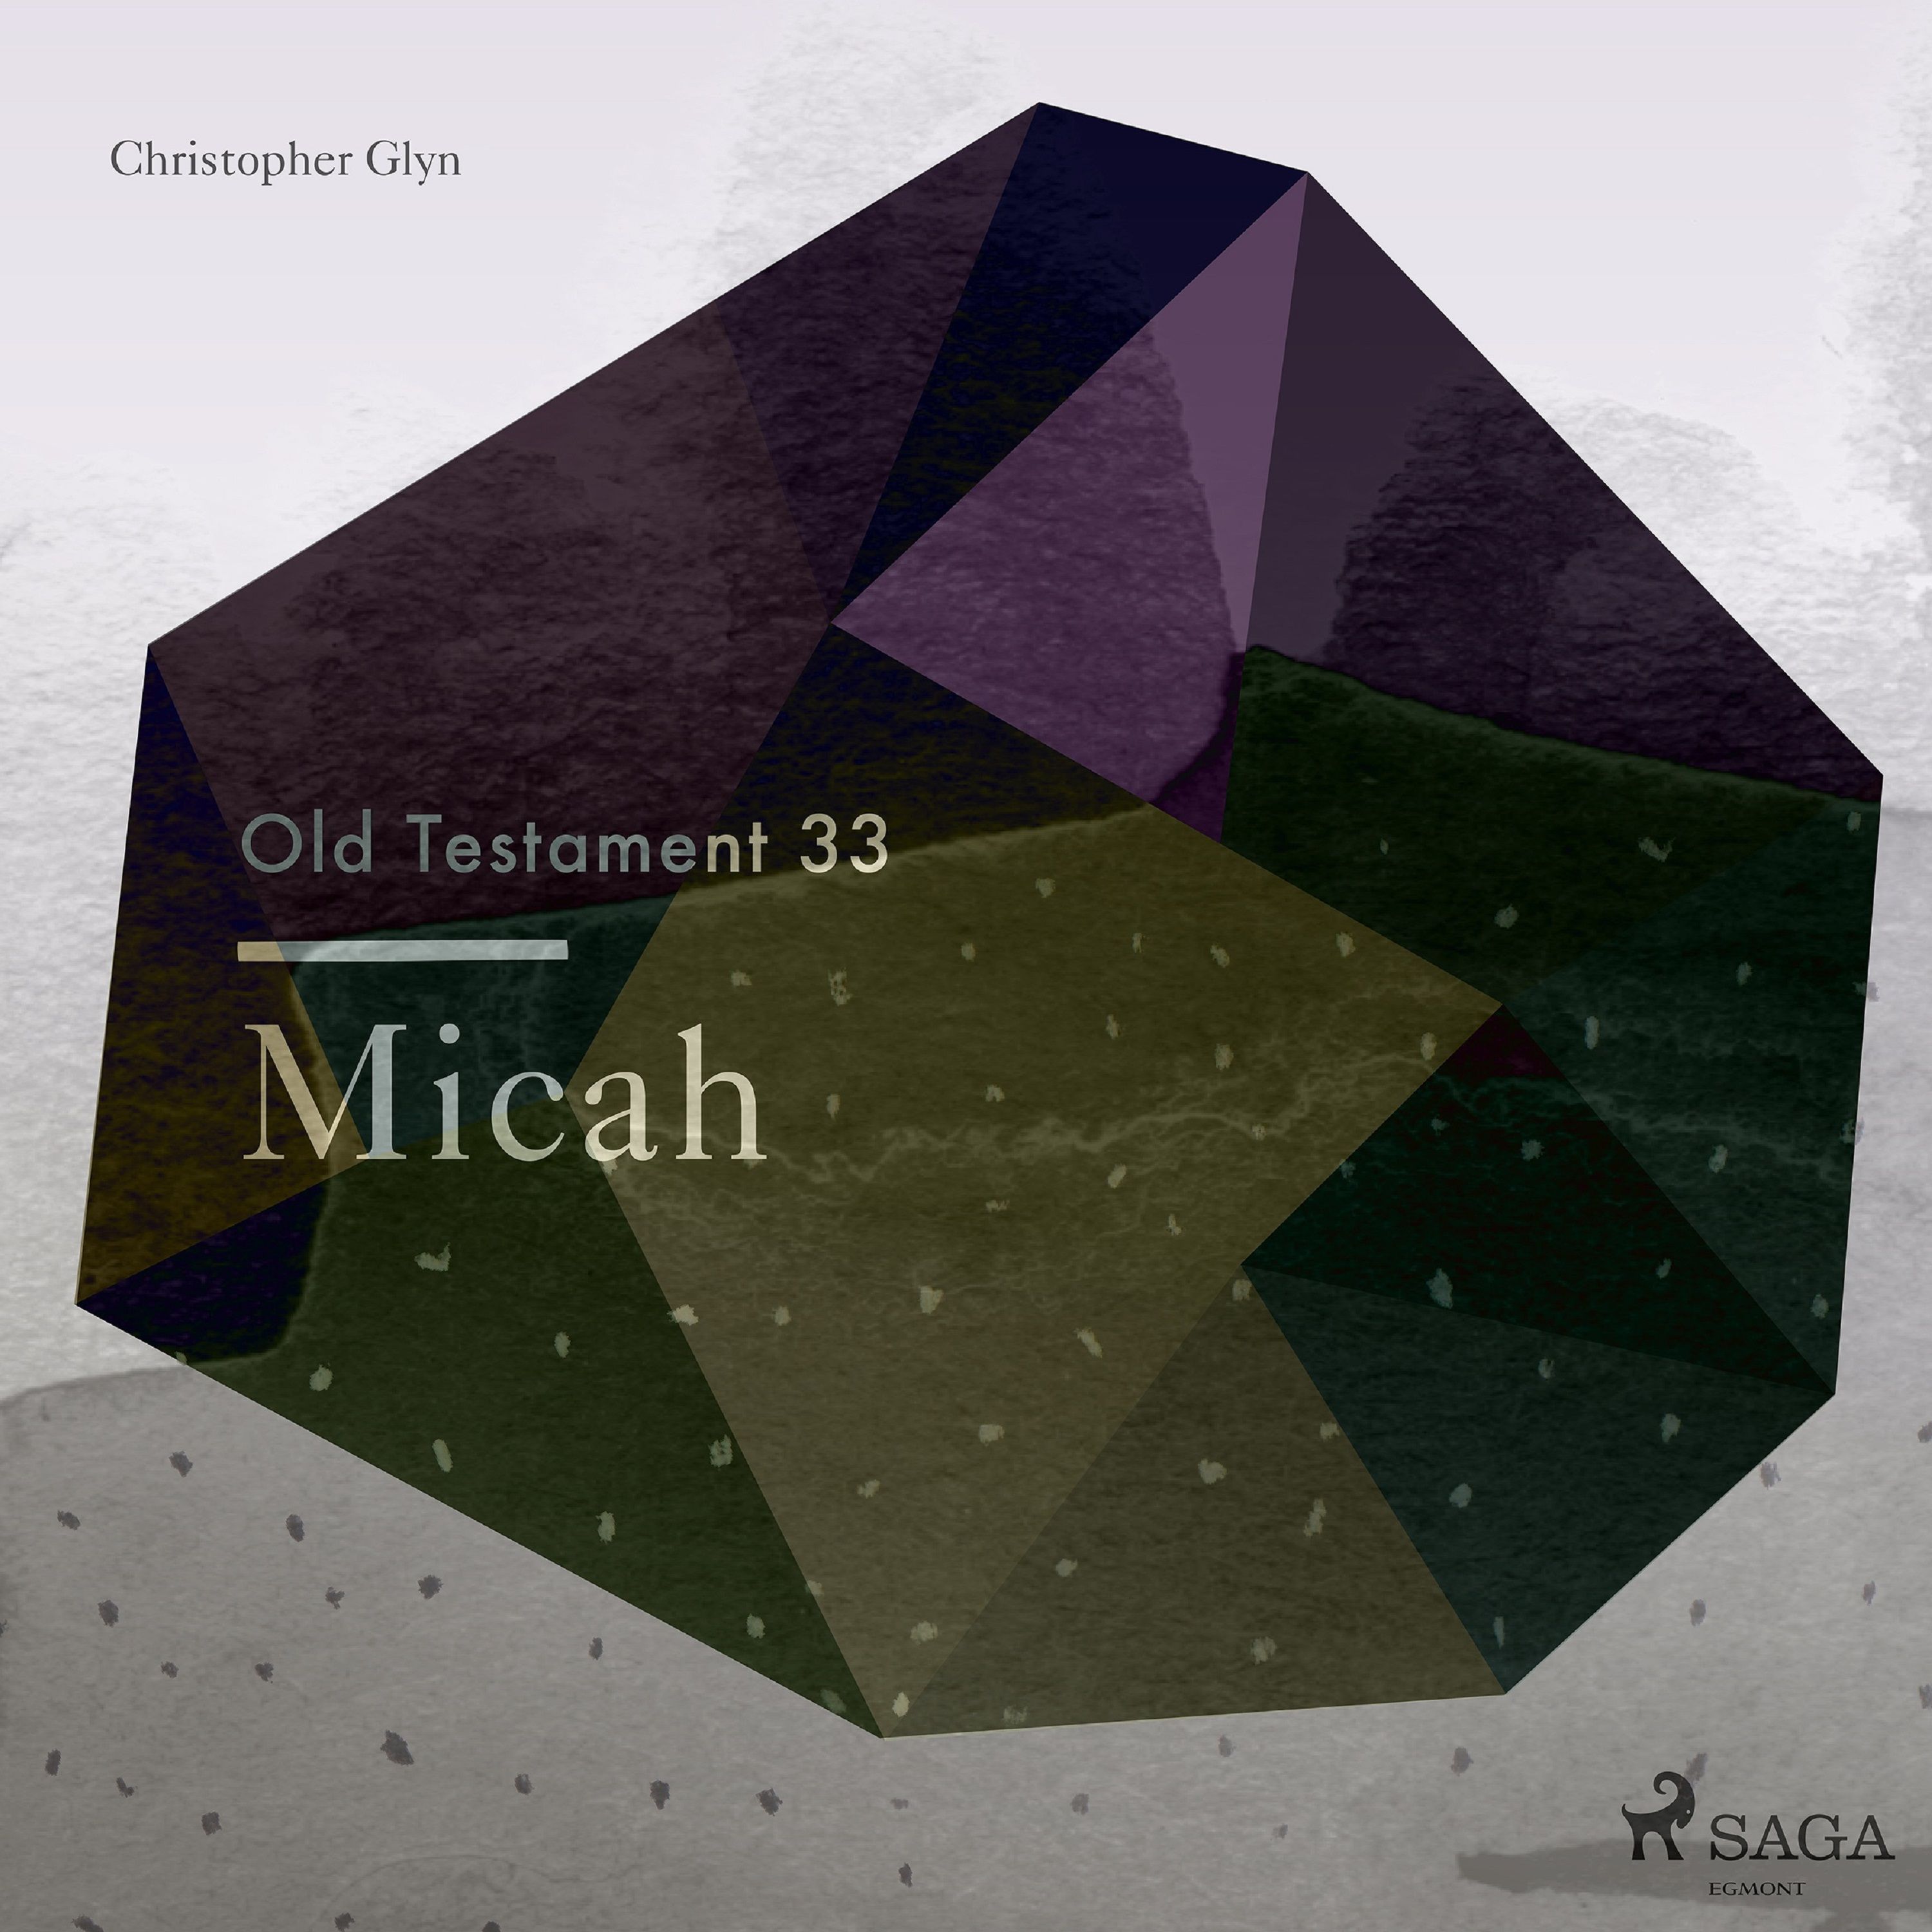 The Old Testament 33 - Micah, lydbog af Christopher Glyn